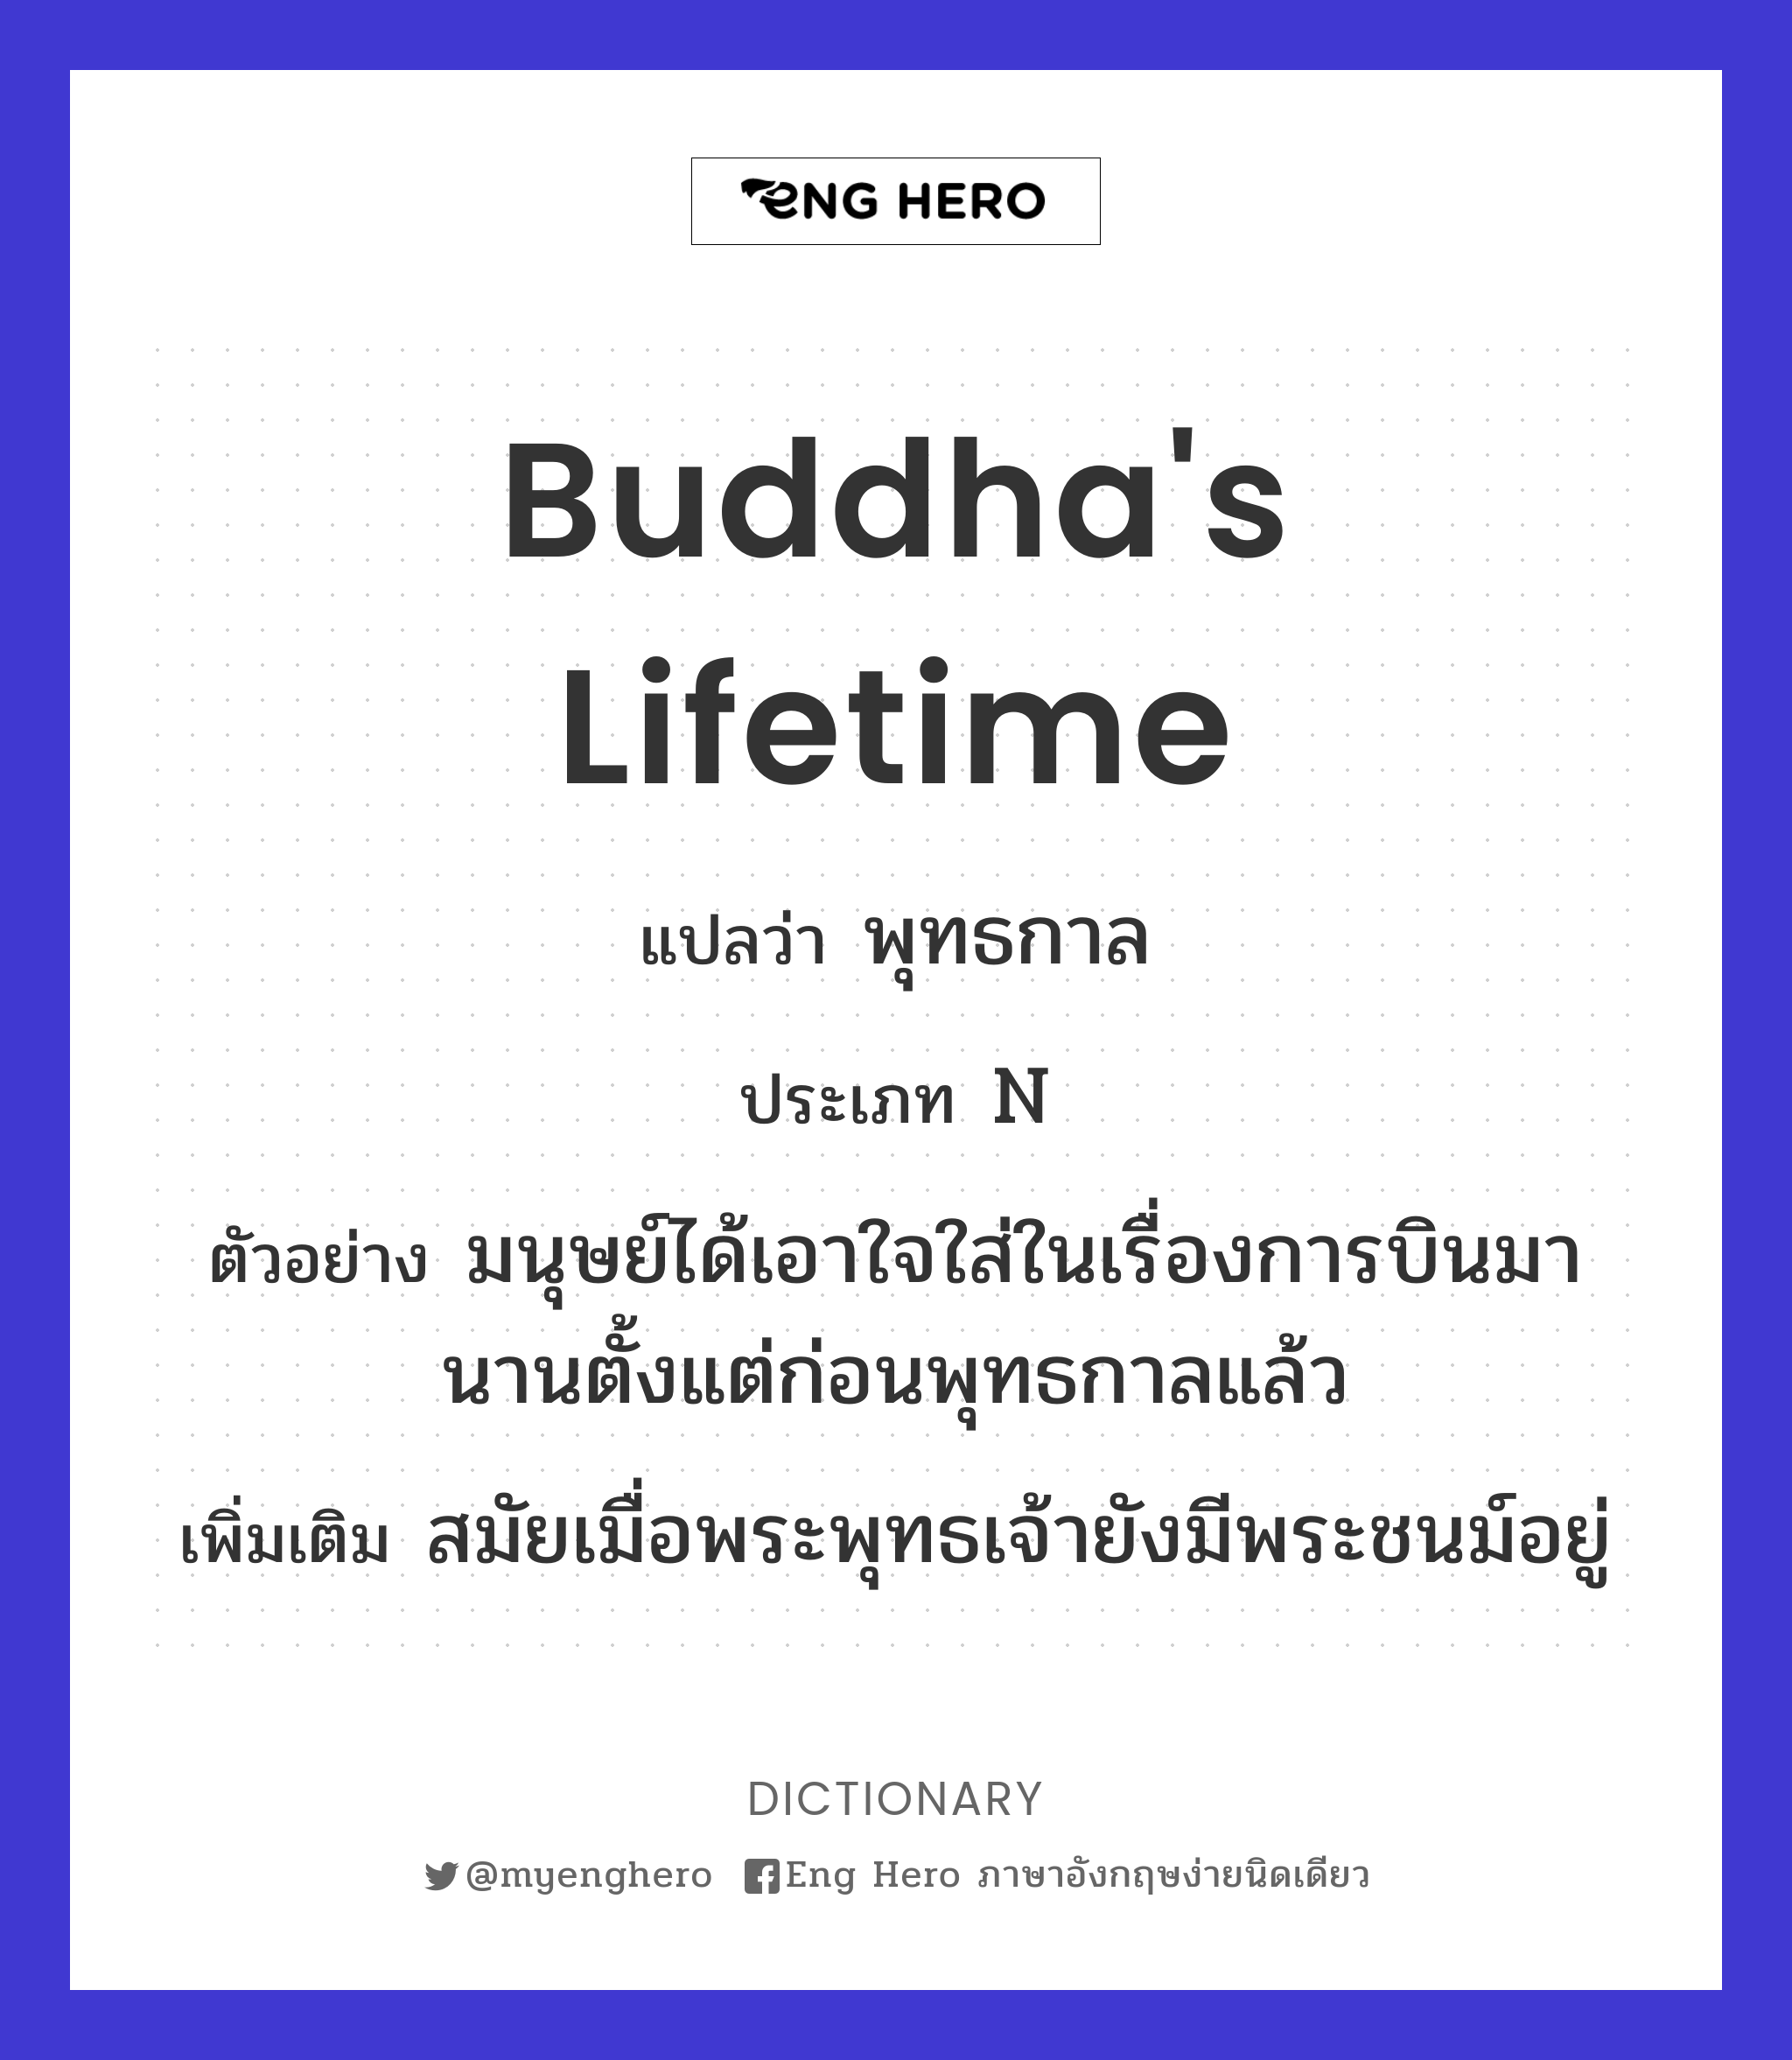 Buddha's lifetime